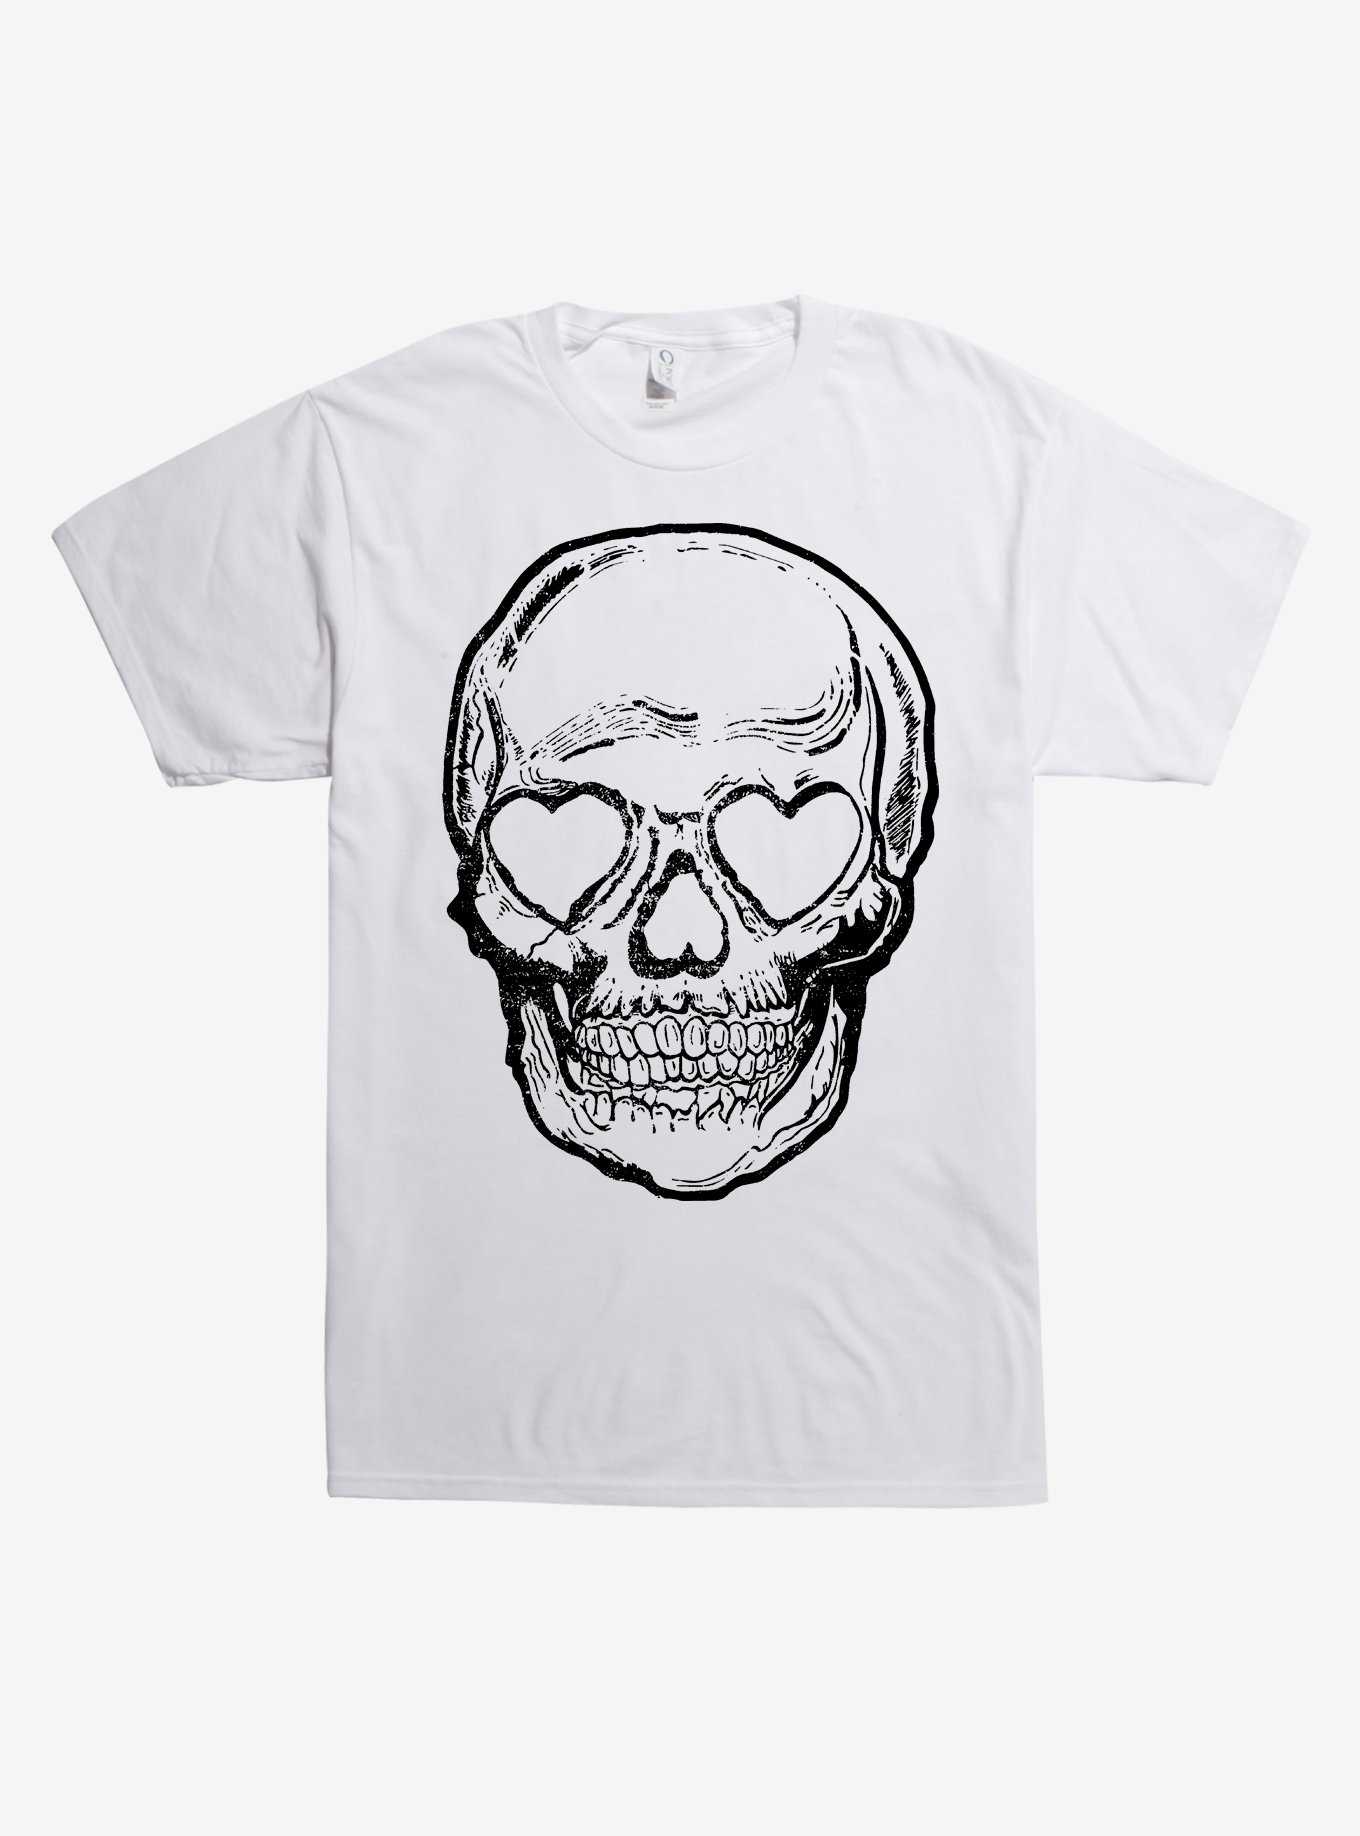 Heart Eyes Skull T-Shirt, , hi-res